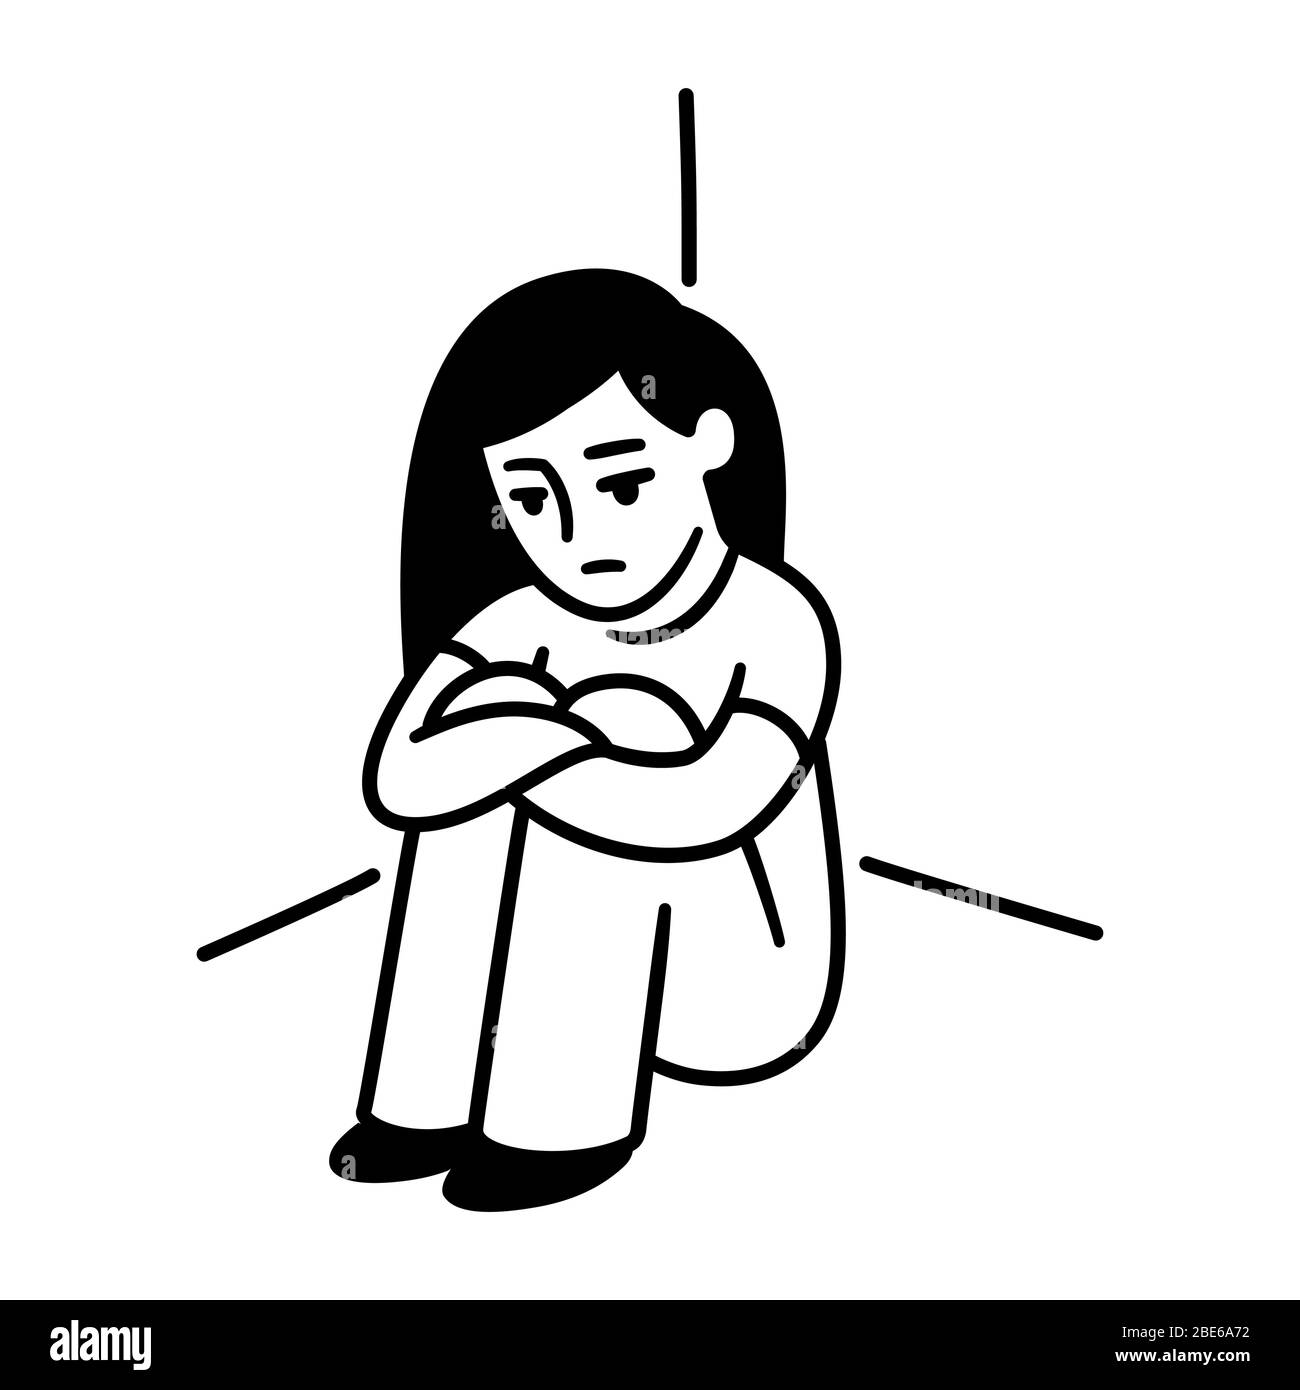 Une adolescente assise dans un coin ensergeant les genoux. Dépression, tristesse et solitude. Dessin de dessin de dessin animé simple noir et blanc. Clip vectoriel de santé mentale Illustration de Vecteur